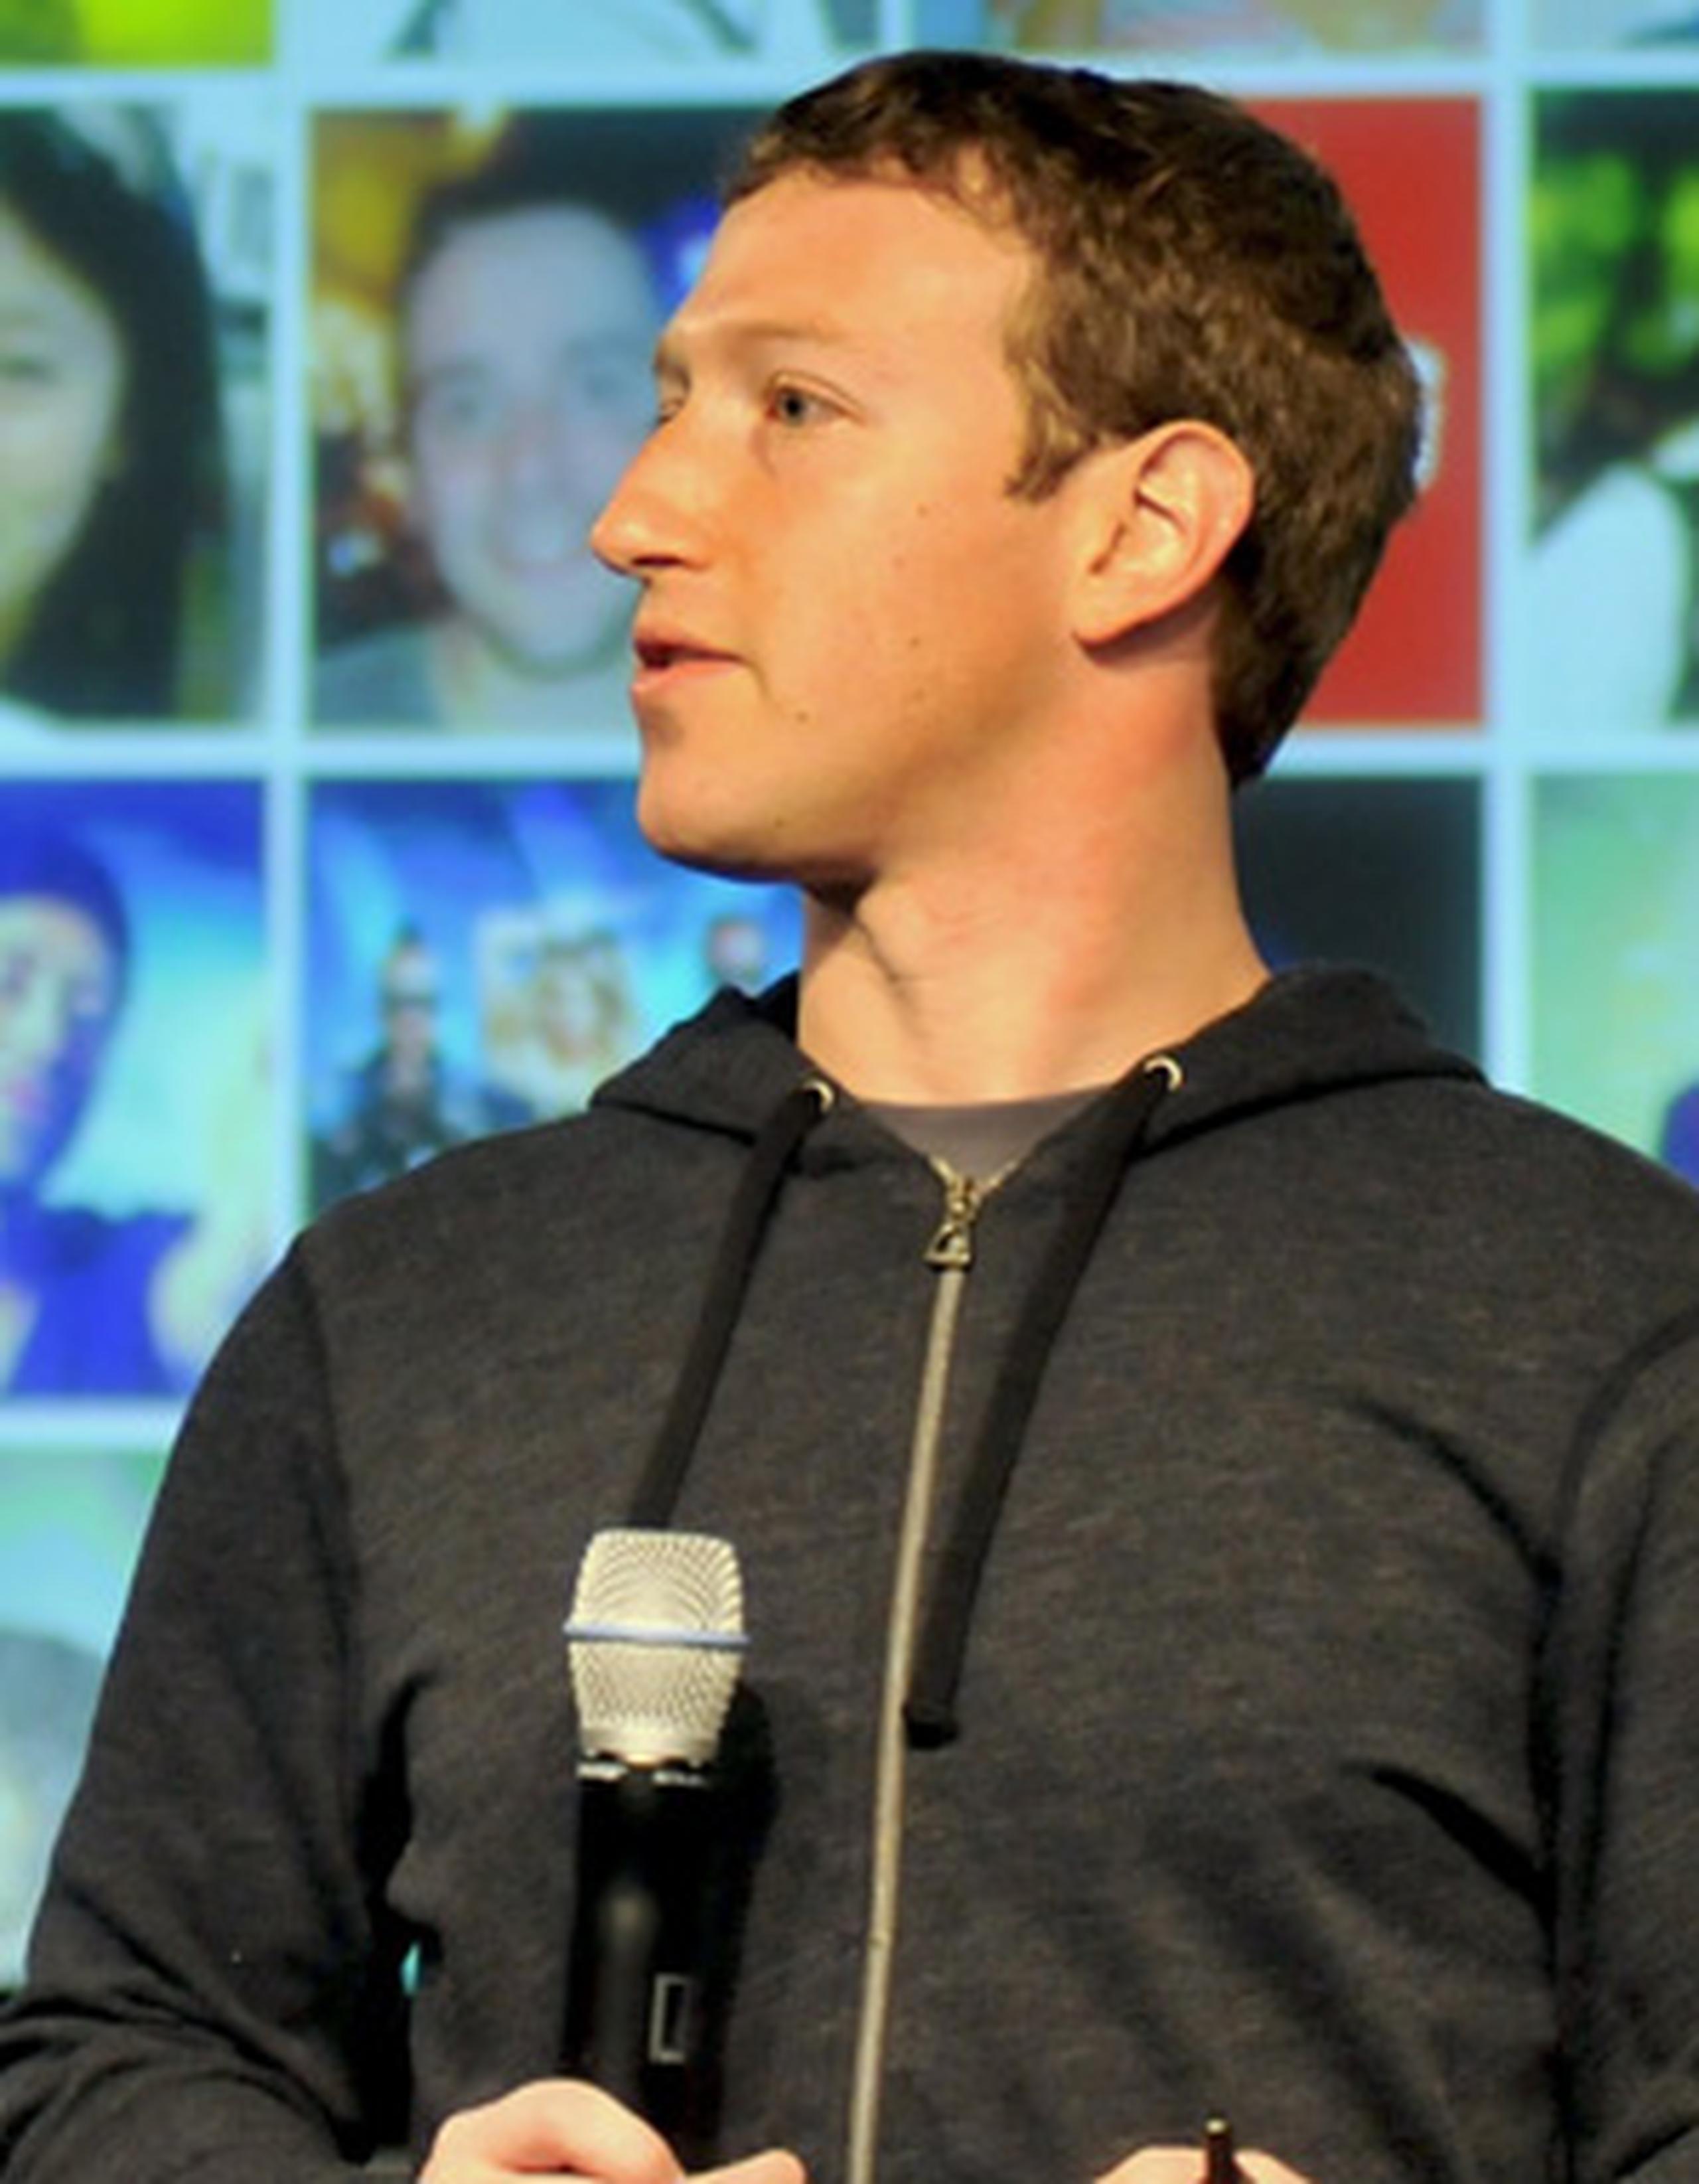 Ayer fue la primera vez que Zuckerberg abordó el tema públicamente. (Archivo/AFP)